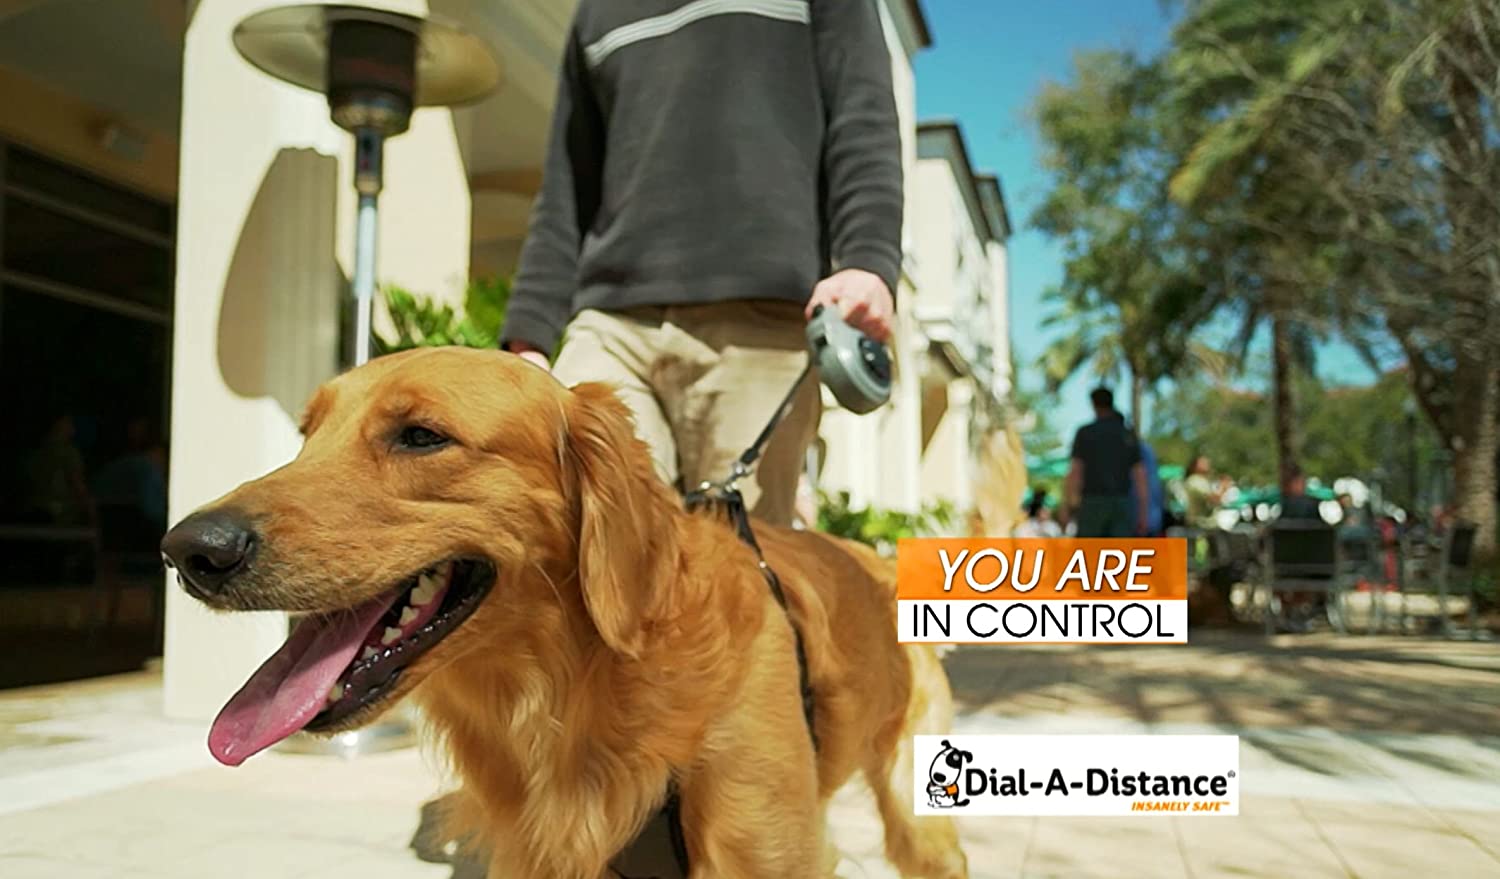  در یک پیاده رو شلوغ؟ شاید حداکثر 2 فوت را امتحان کنید. در مسیر بازتر؟ 7 یا 8 فوت را امتحان کنید. در یک پارک باز؟ اجازه دهید سگ شما از برد کامل 15 فوتی لذت ببرد